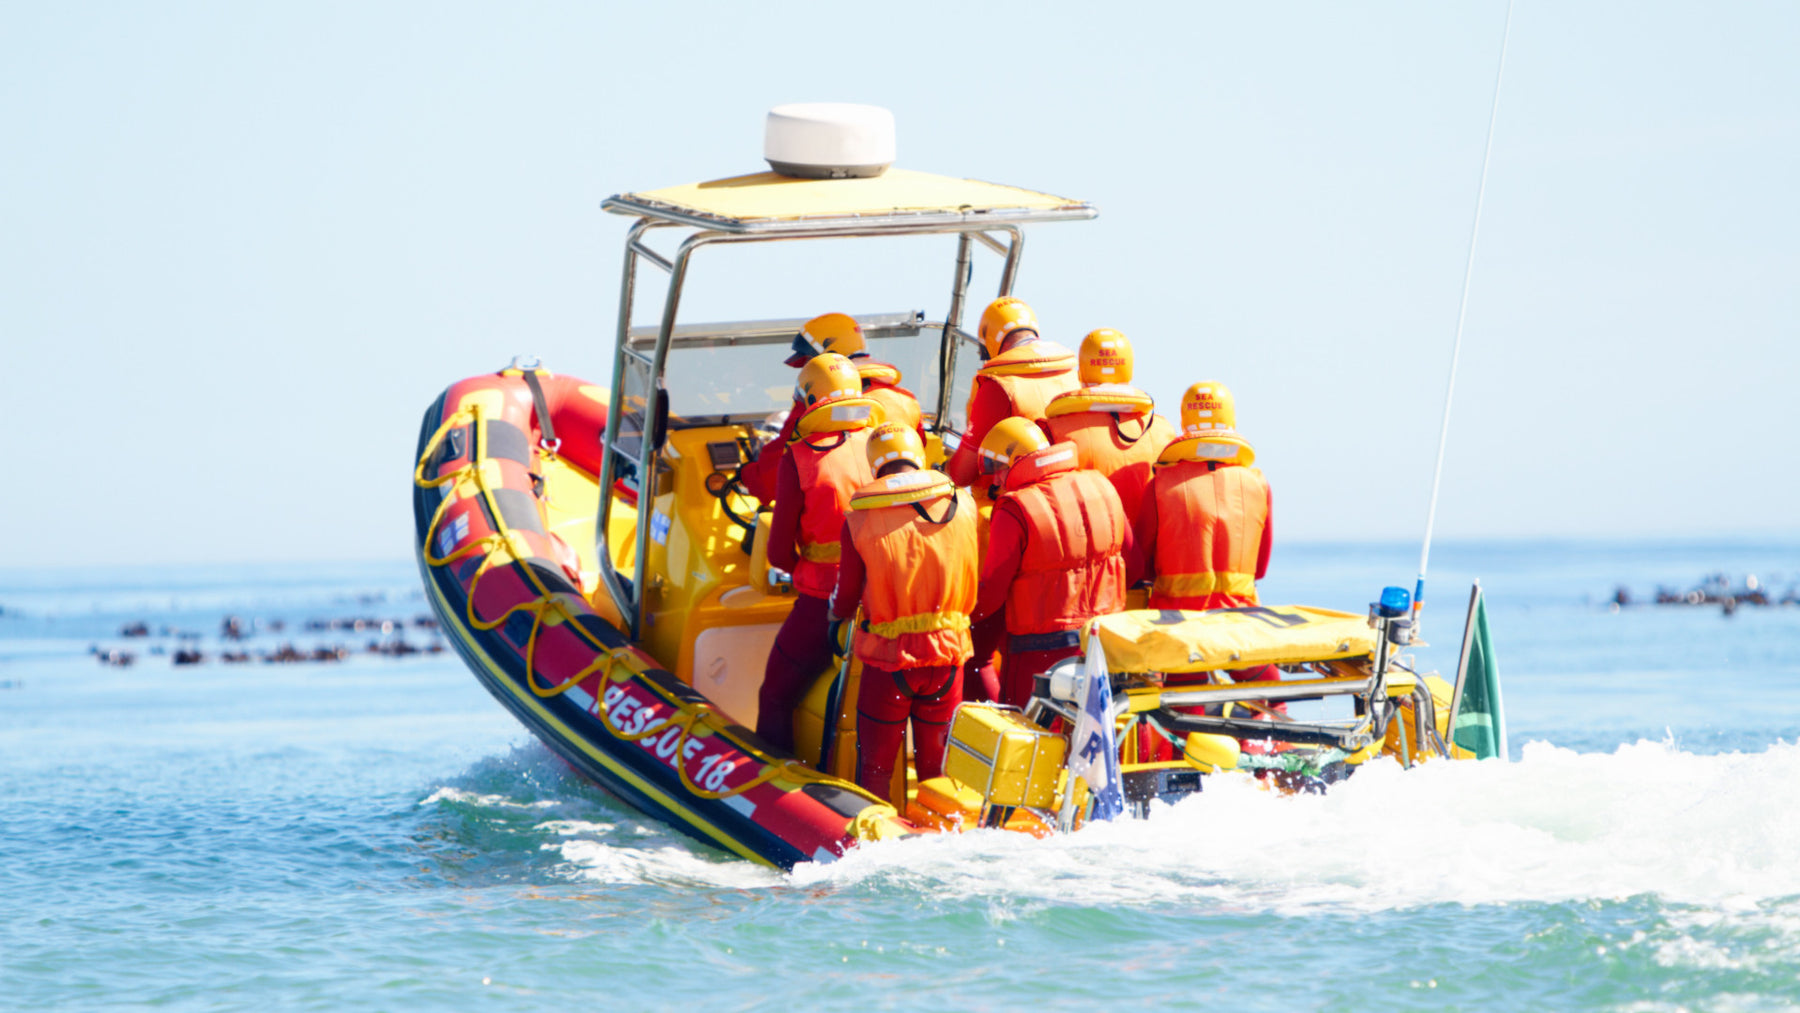 Sea rescue: the importance of Zodiac RIBs